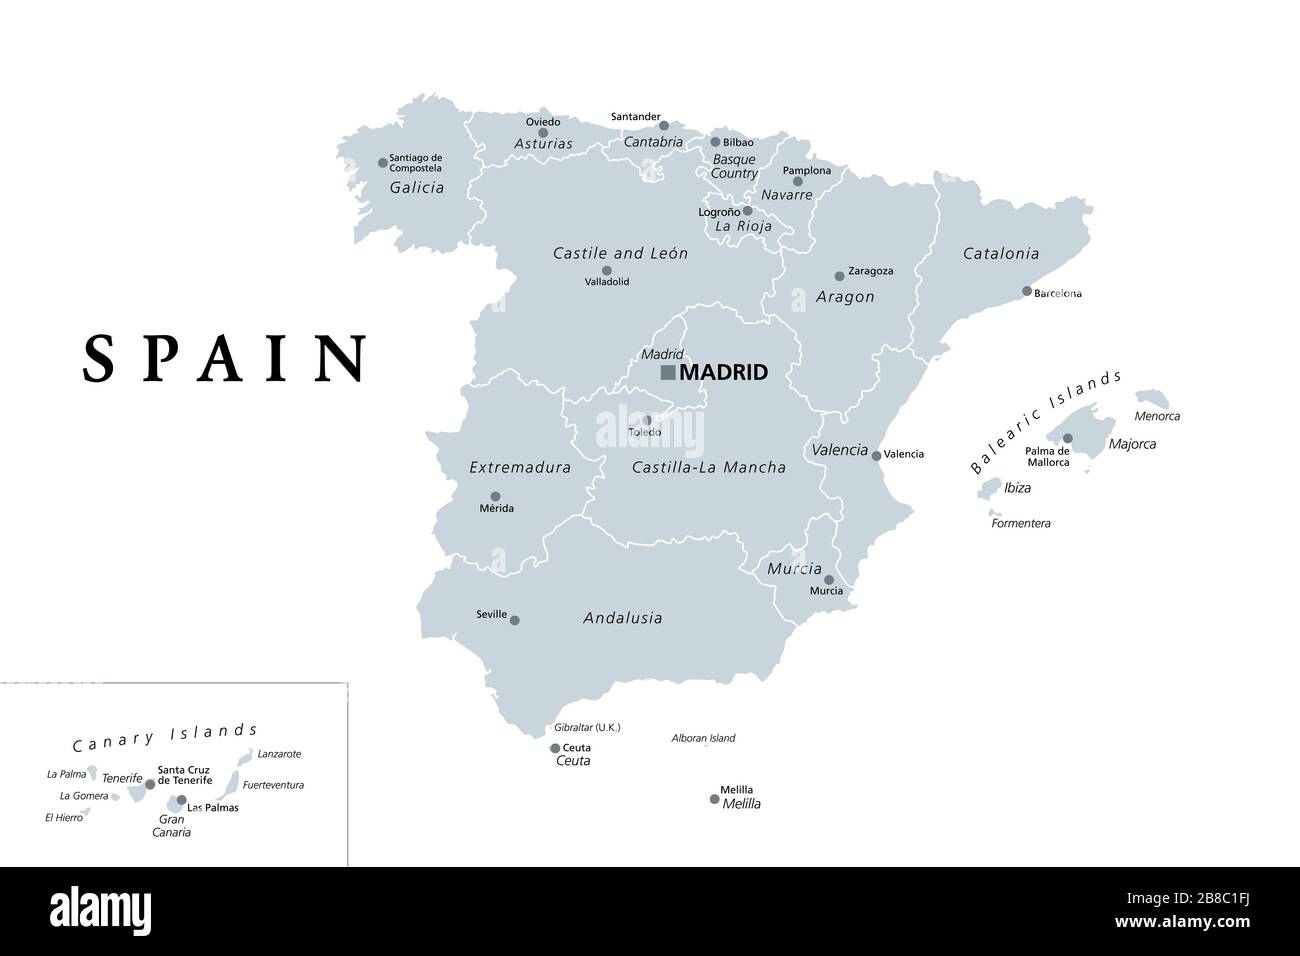 Espagne, carte politique grise avec divisions administratives. Royaume d'Espagne avec la capitale Madrid, les communautés autonomes, les frontières et les capitales. Banque D'Images